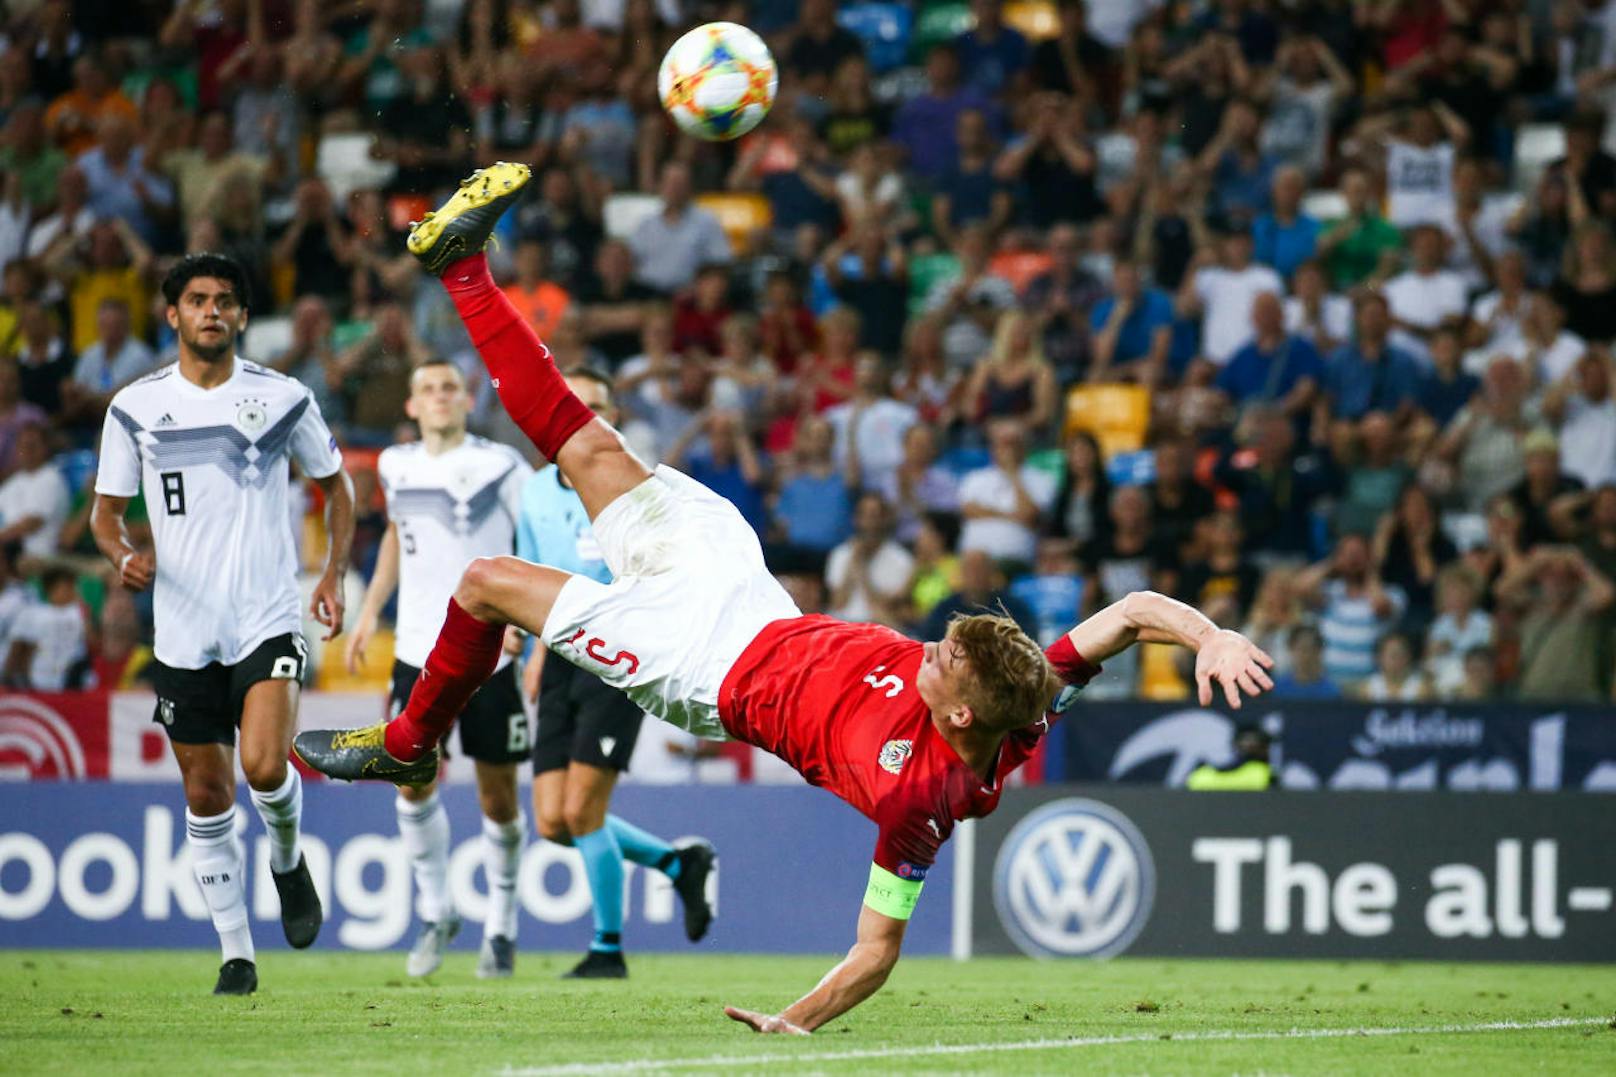 Österreichs U21-Nationalteam qualifizierte sich erstmals für eine EM-Endrunde. Beim Turnier in Italien gab es einen 2:0-Sieg gegen Serbien, nach einem 1:3 gegen Dänemark und einem 1:1 gegen Deutschland war aber in der Gruppenphase Schluss.